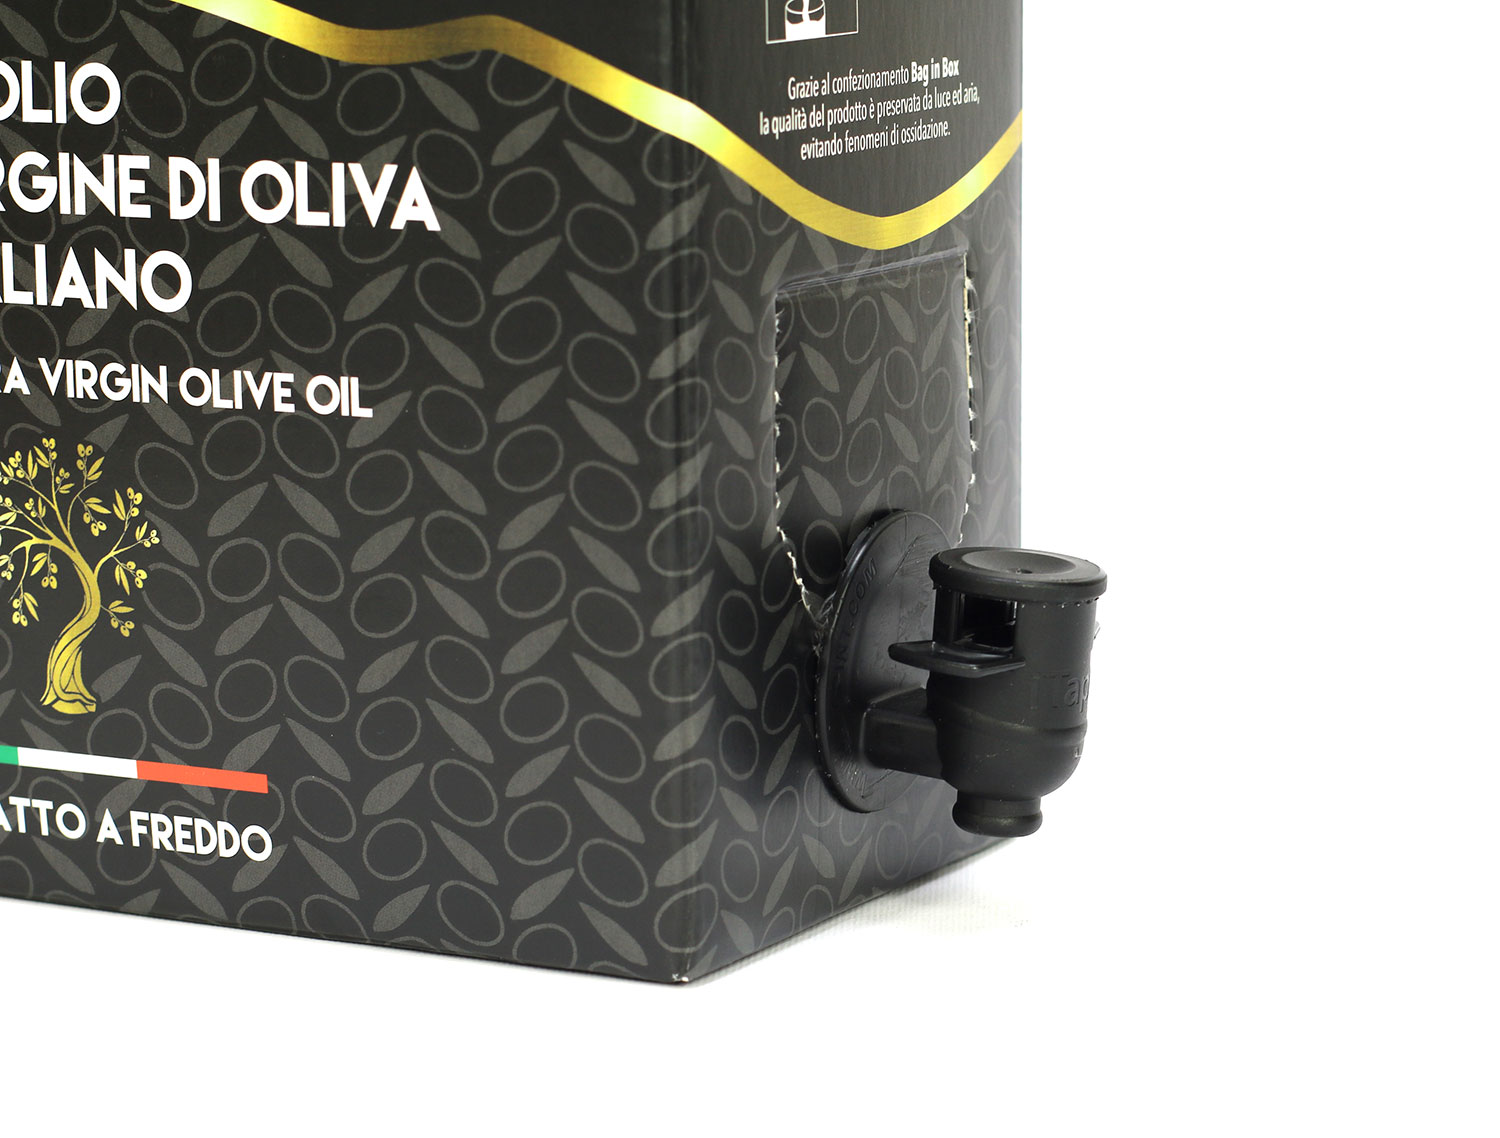 Il bag in box per l'olio extra vergine d'oliva. Conviene davvero?